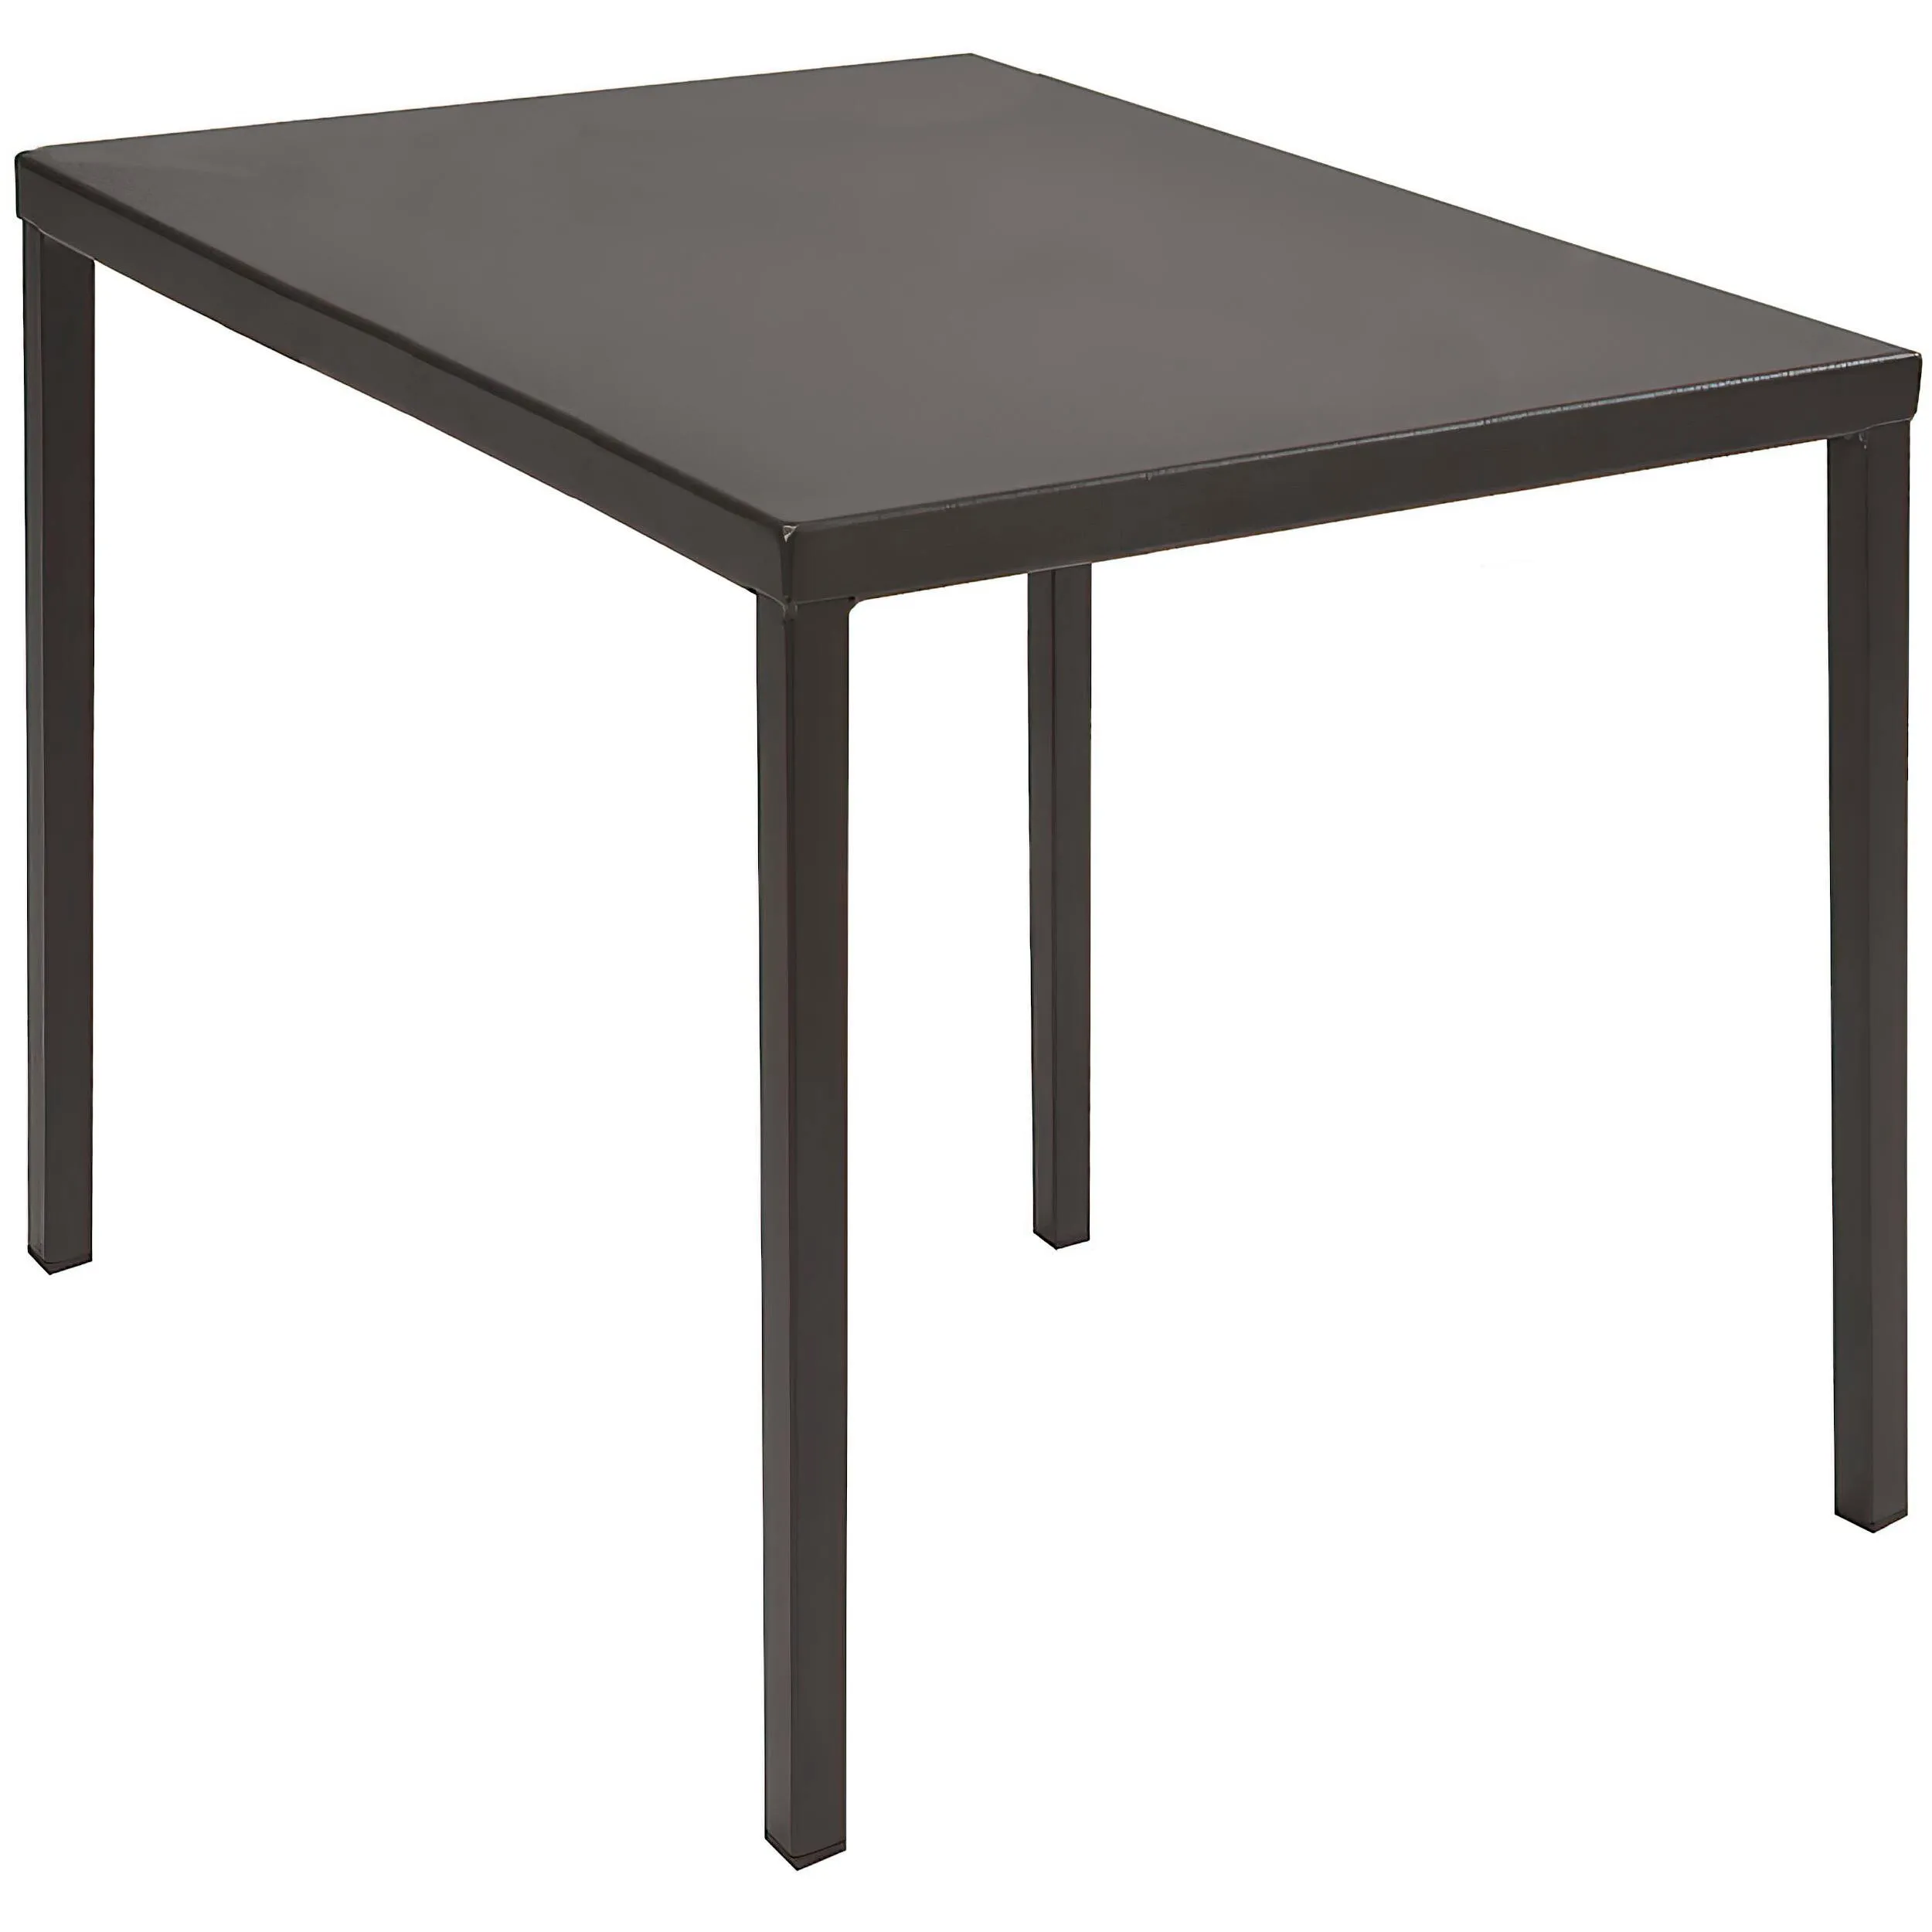 Tavolo Da Giardino impilabile DORIO Dimensioni 138x138xh75 cm - Peso 19,4 kg struttura in acciaio trattato antiruggine 100x100 riciclabile colore grigio antracite